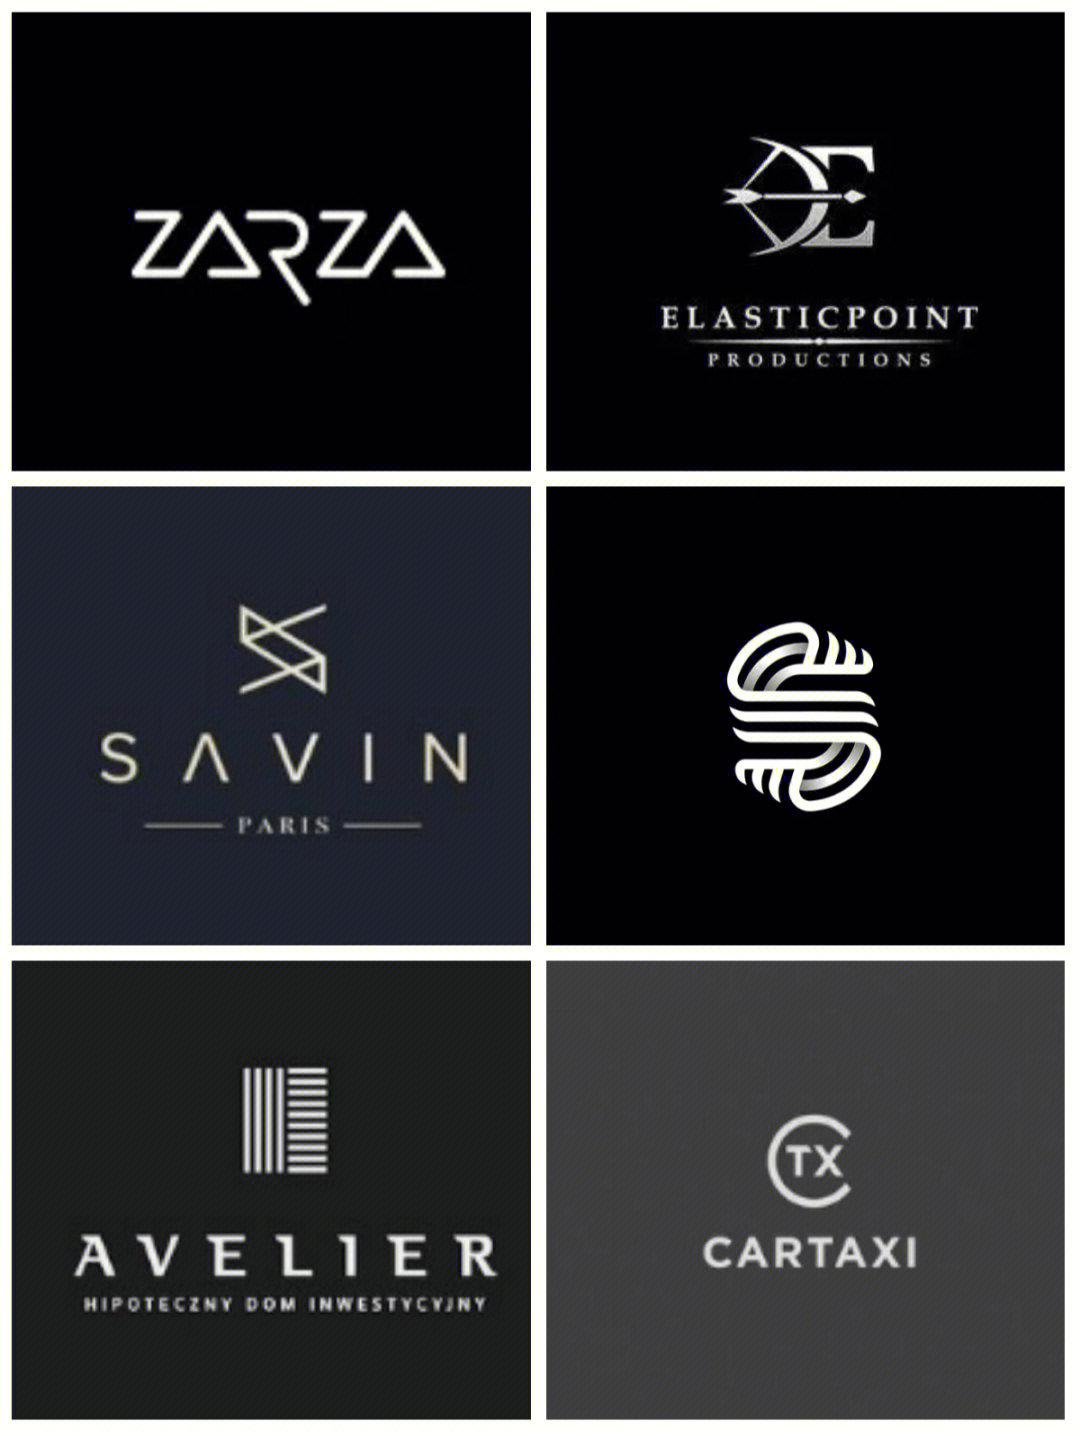 线性logo设计手法图片